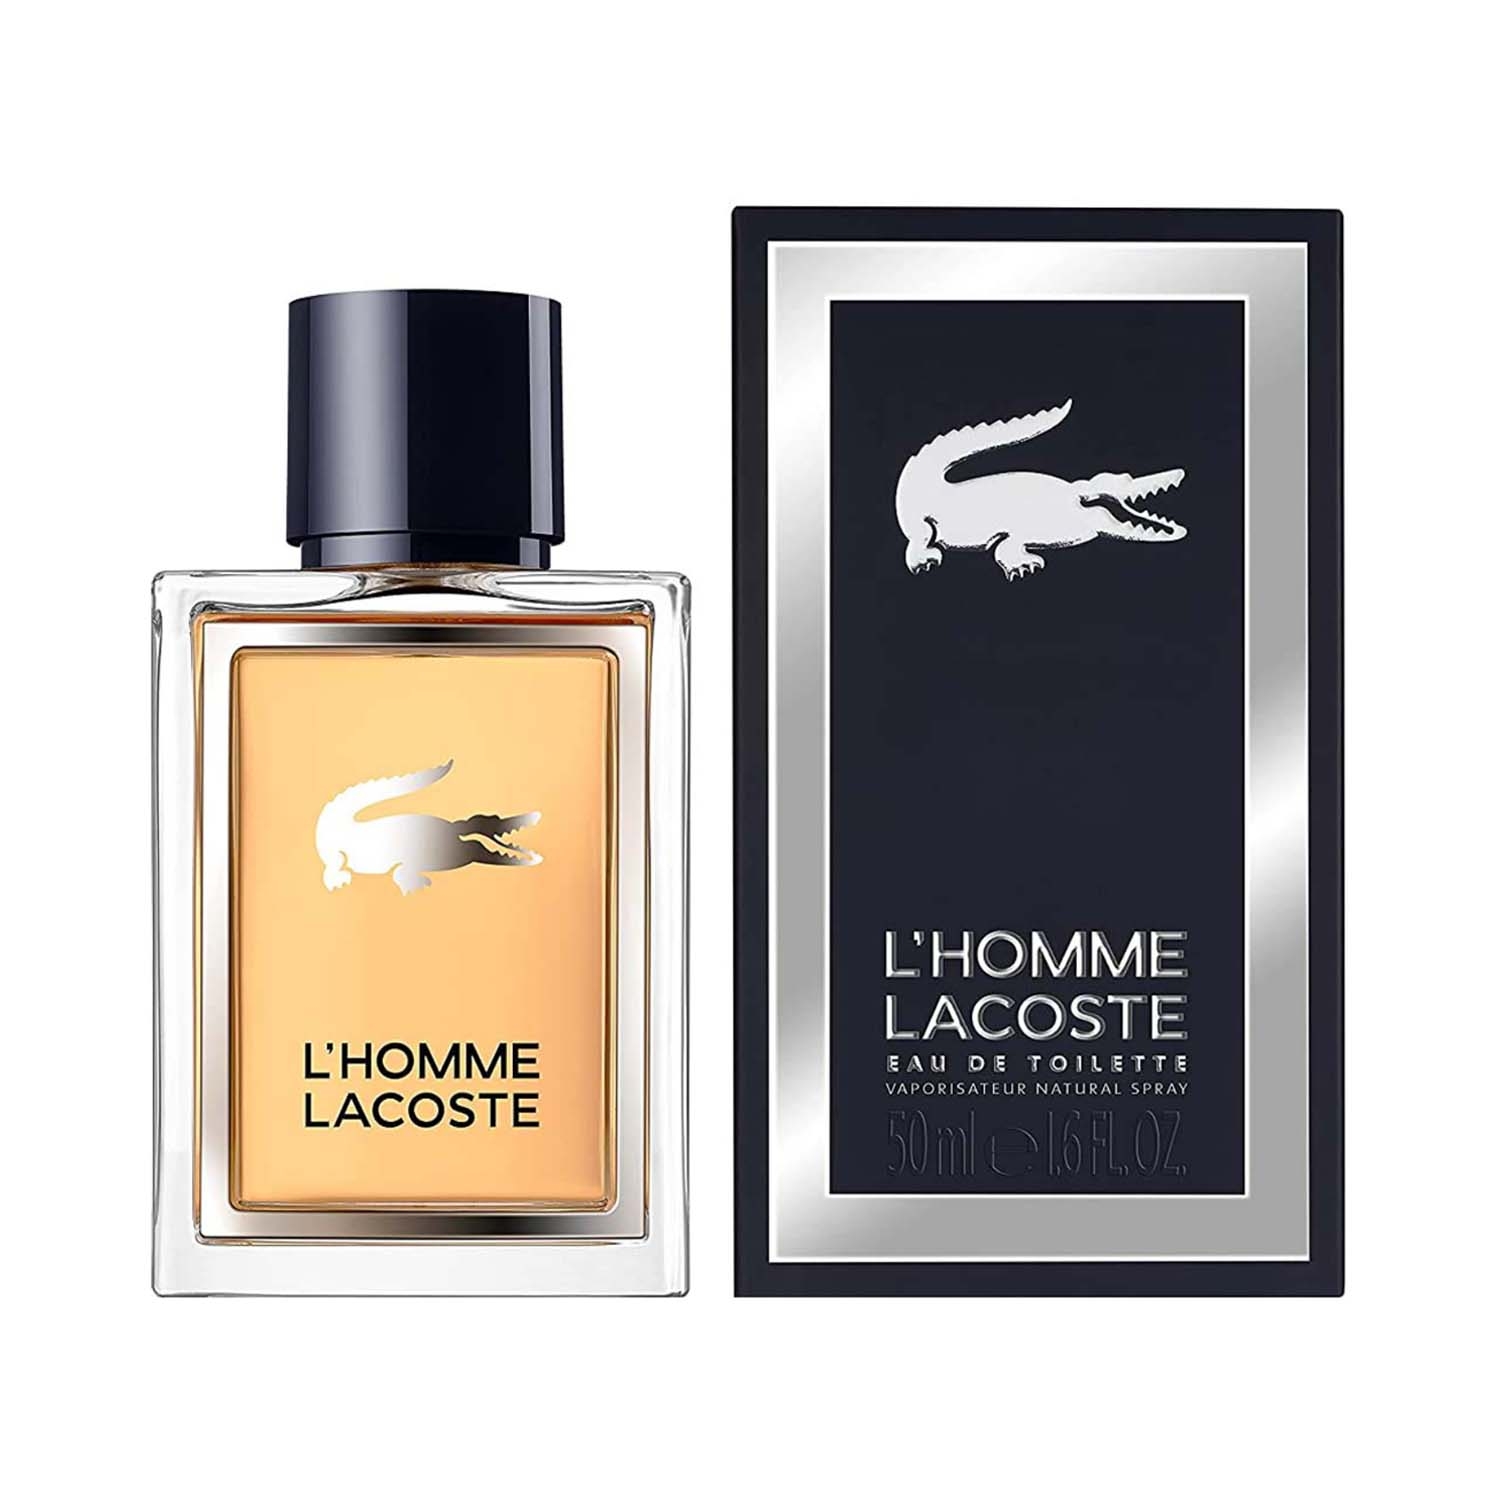 Lacoste Match Point Eau De Toilette Lacoste - Parfums pour Homme homme